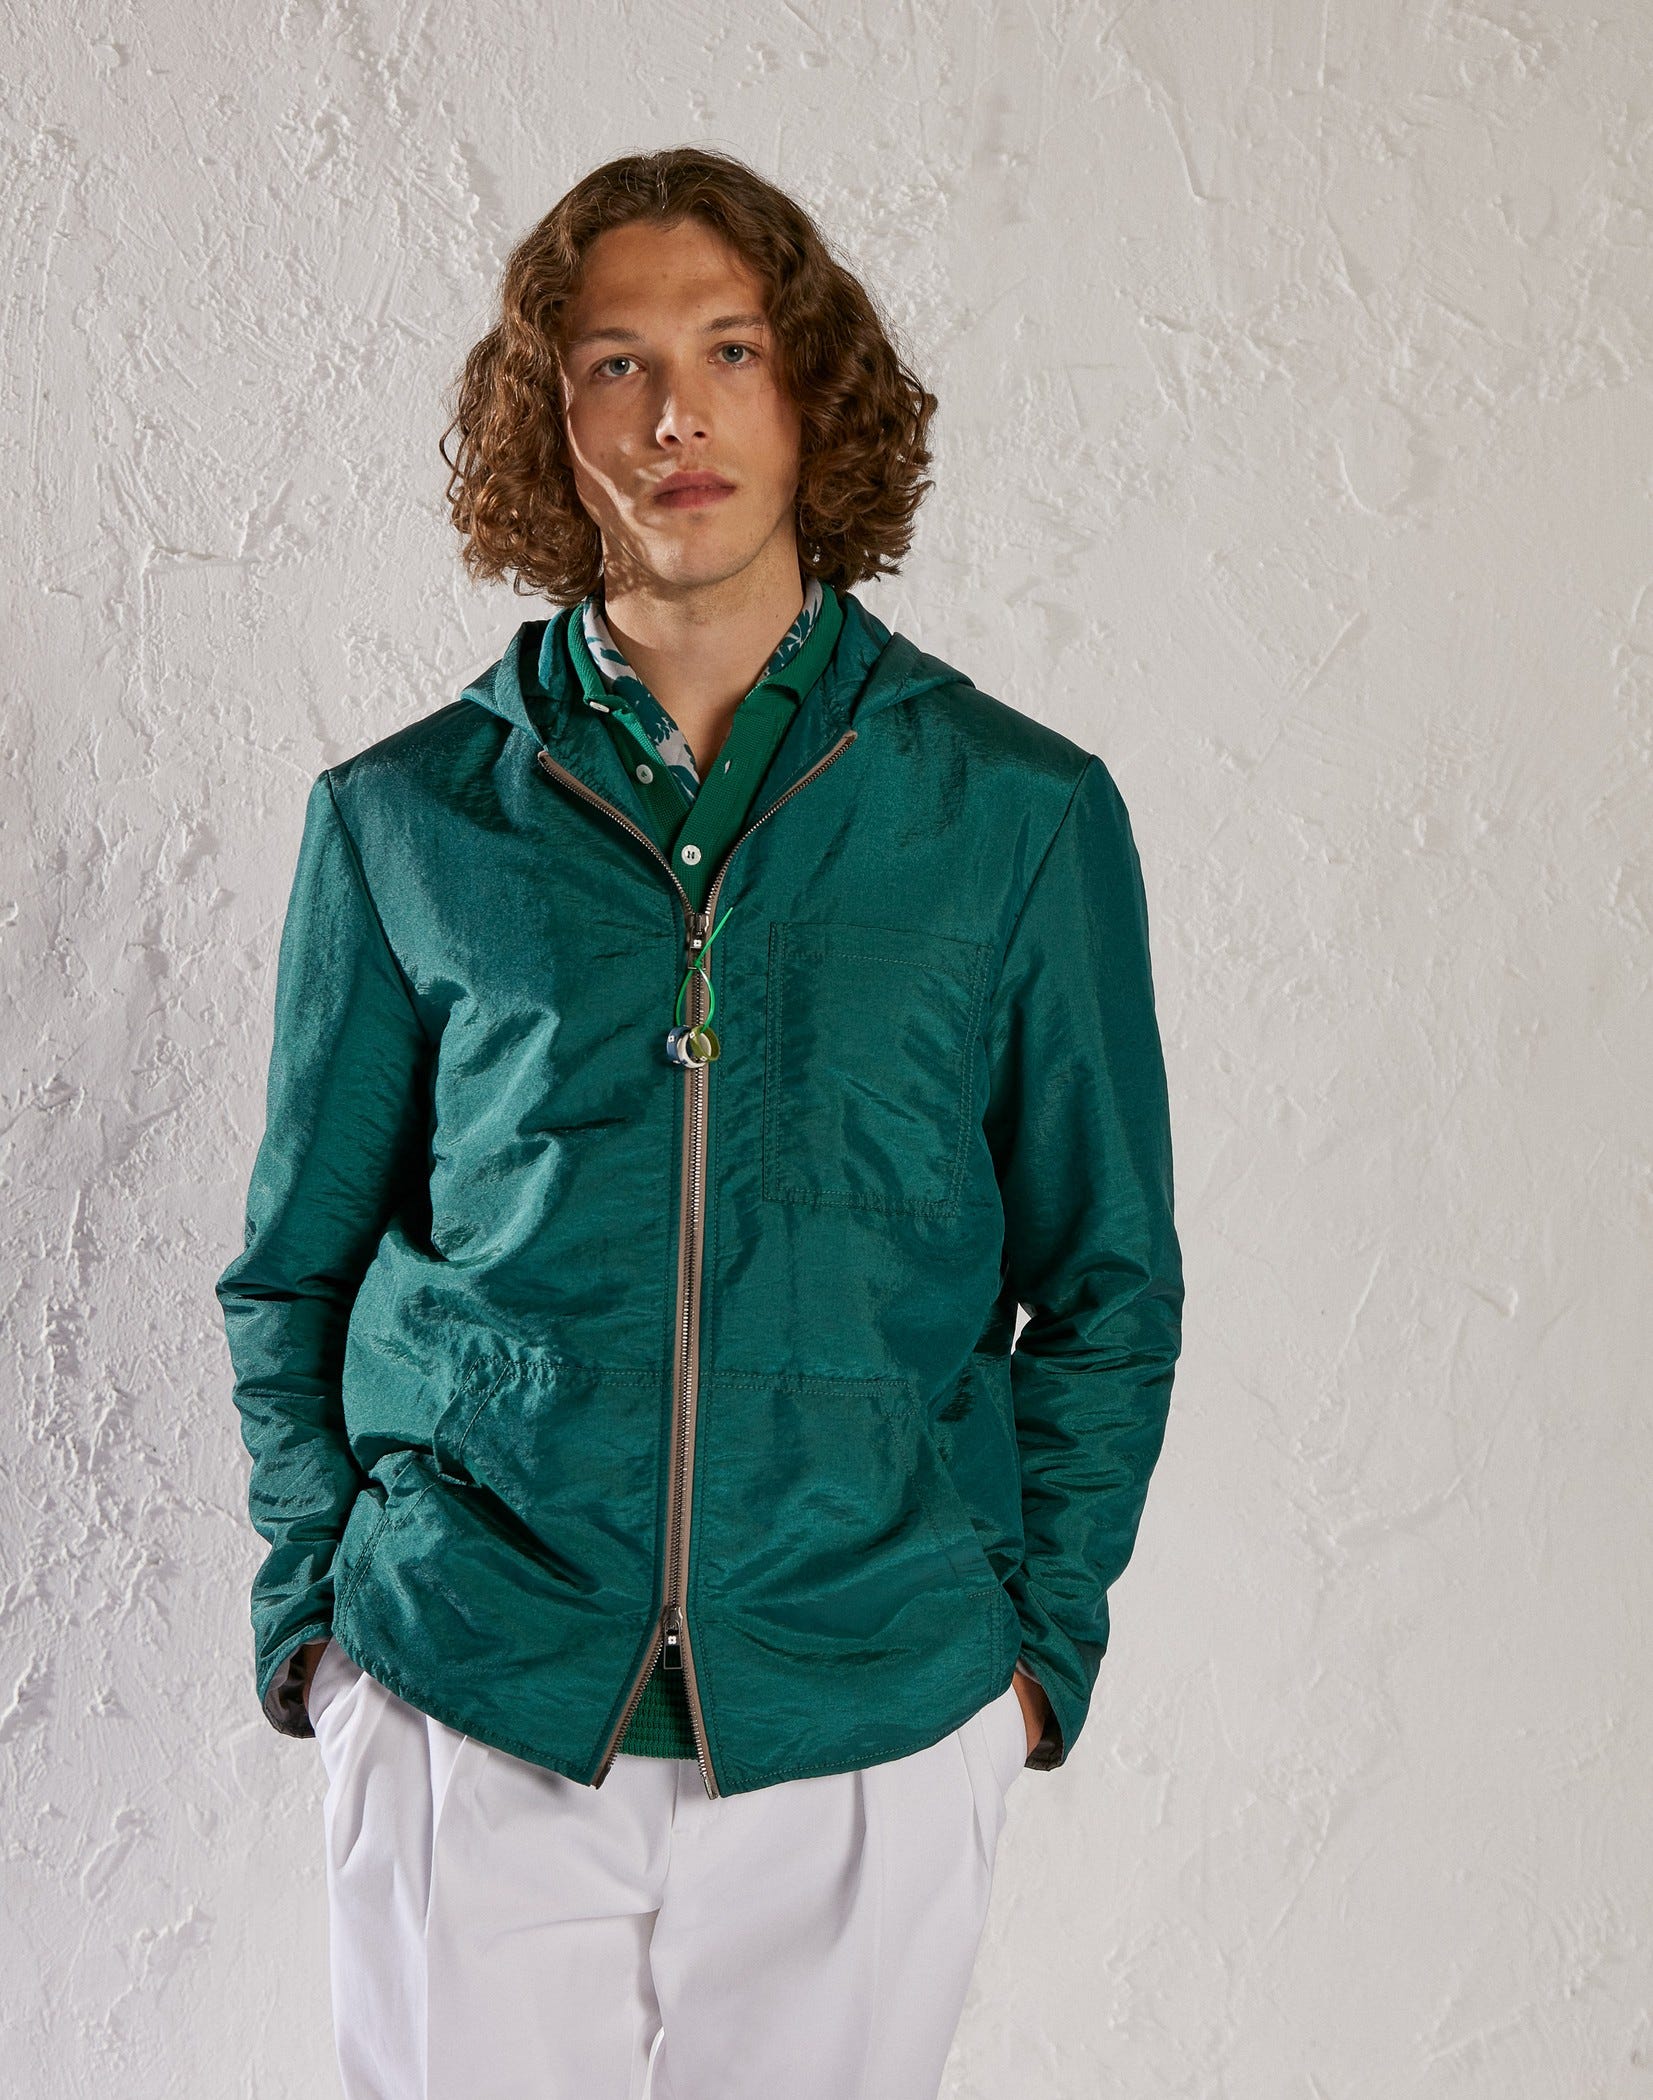 Green hooded jacket - Luigi Lardini capsule